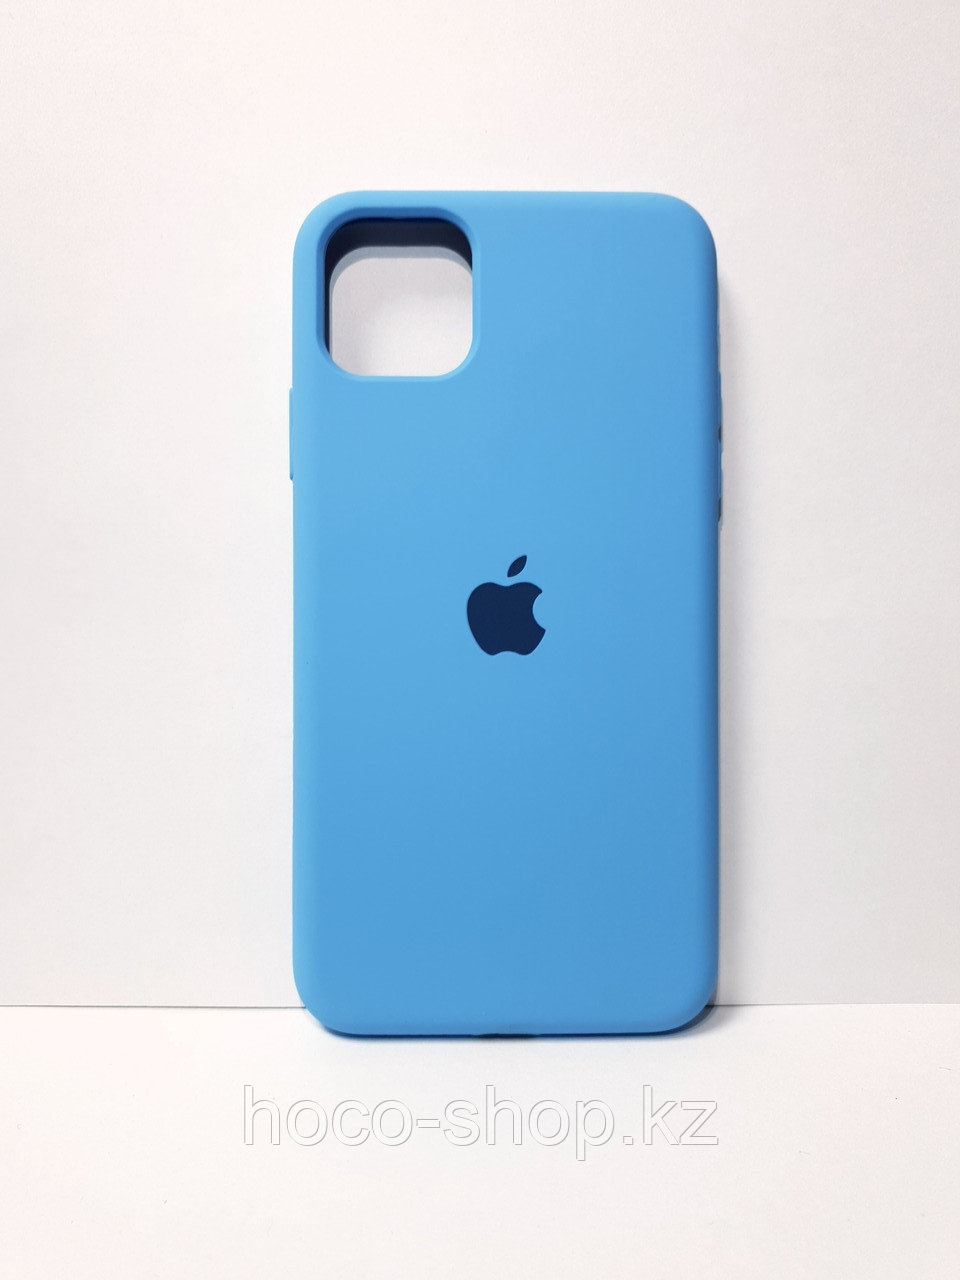 Защитный чехол для iPhone 11 Pro Max Soft Touch силиконовый, голубой